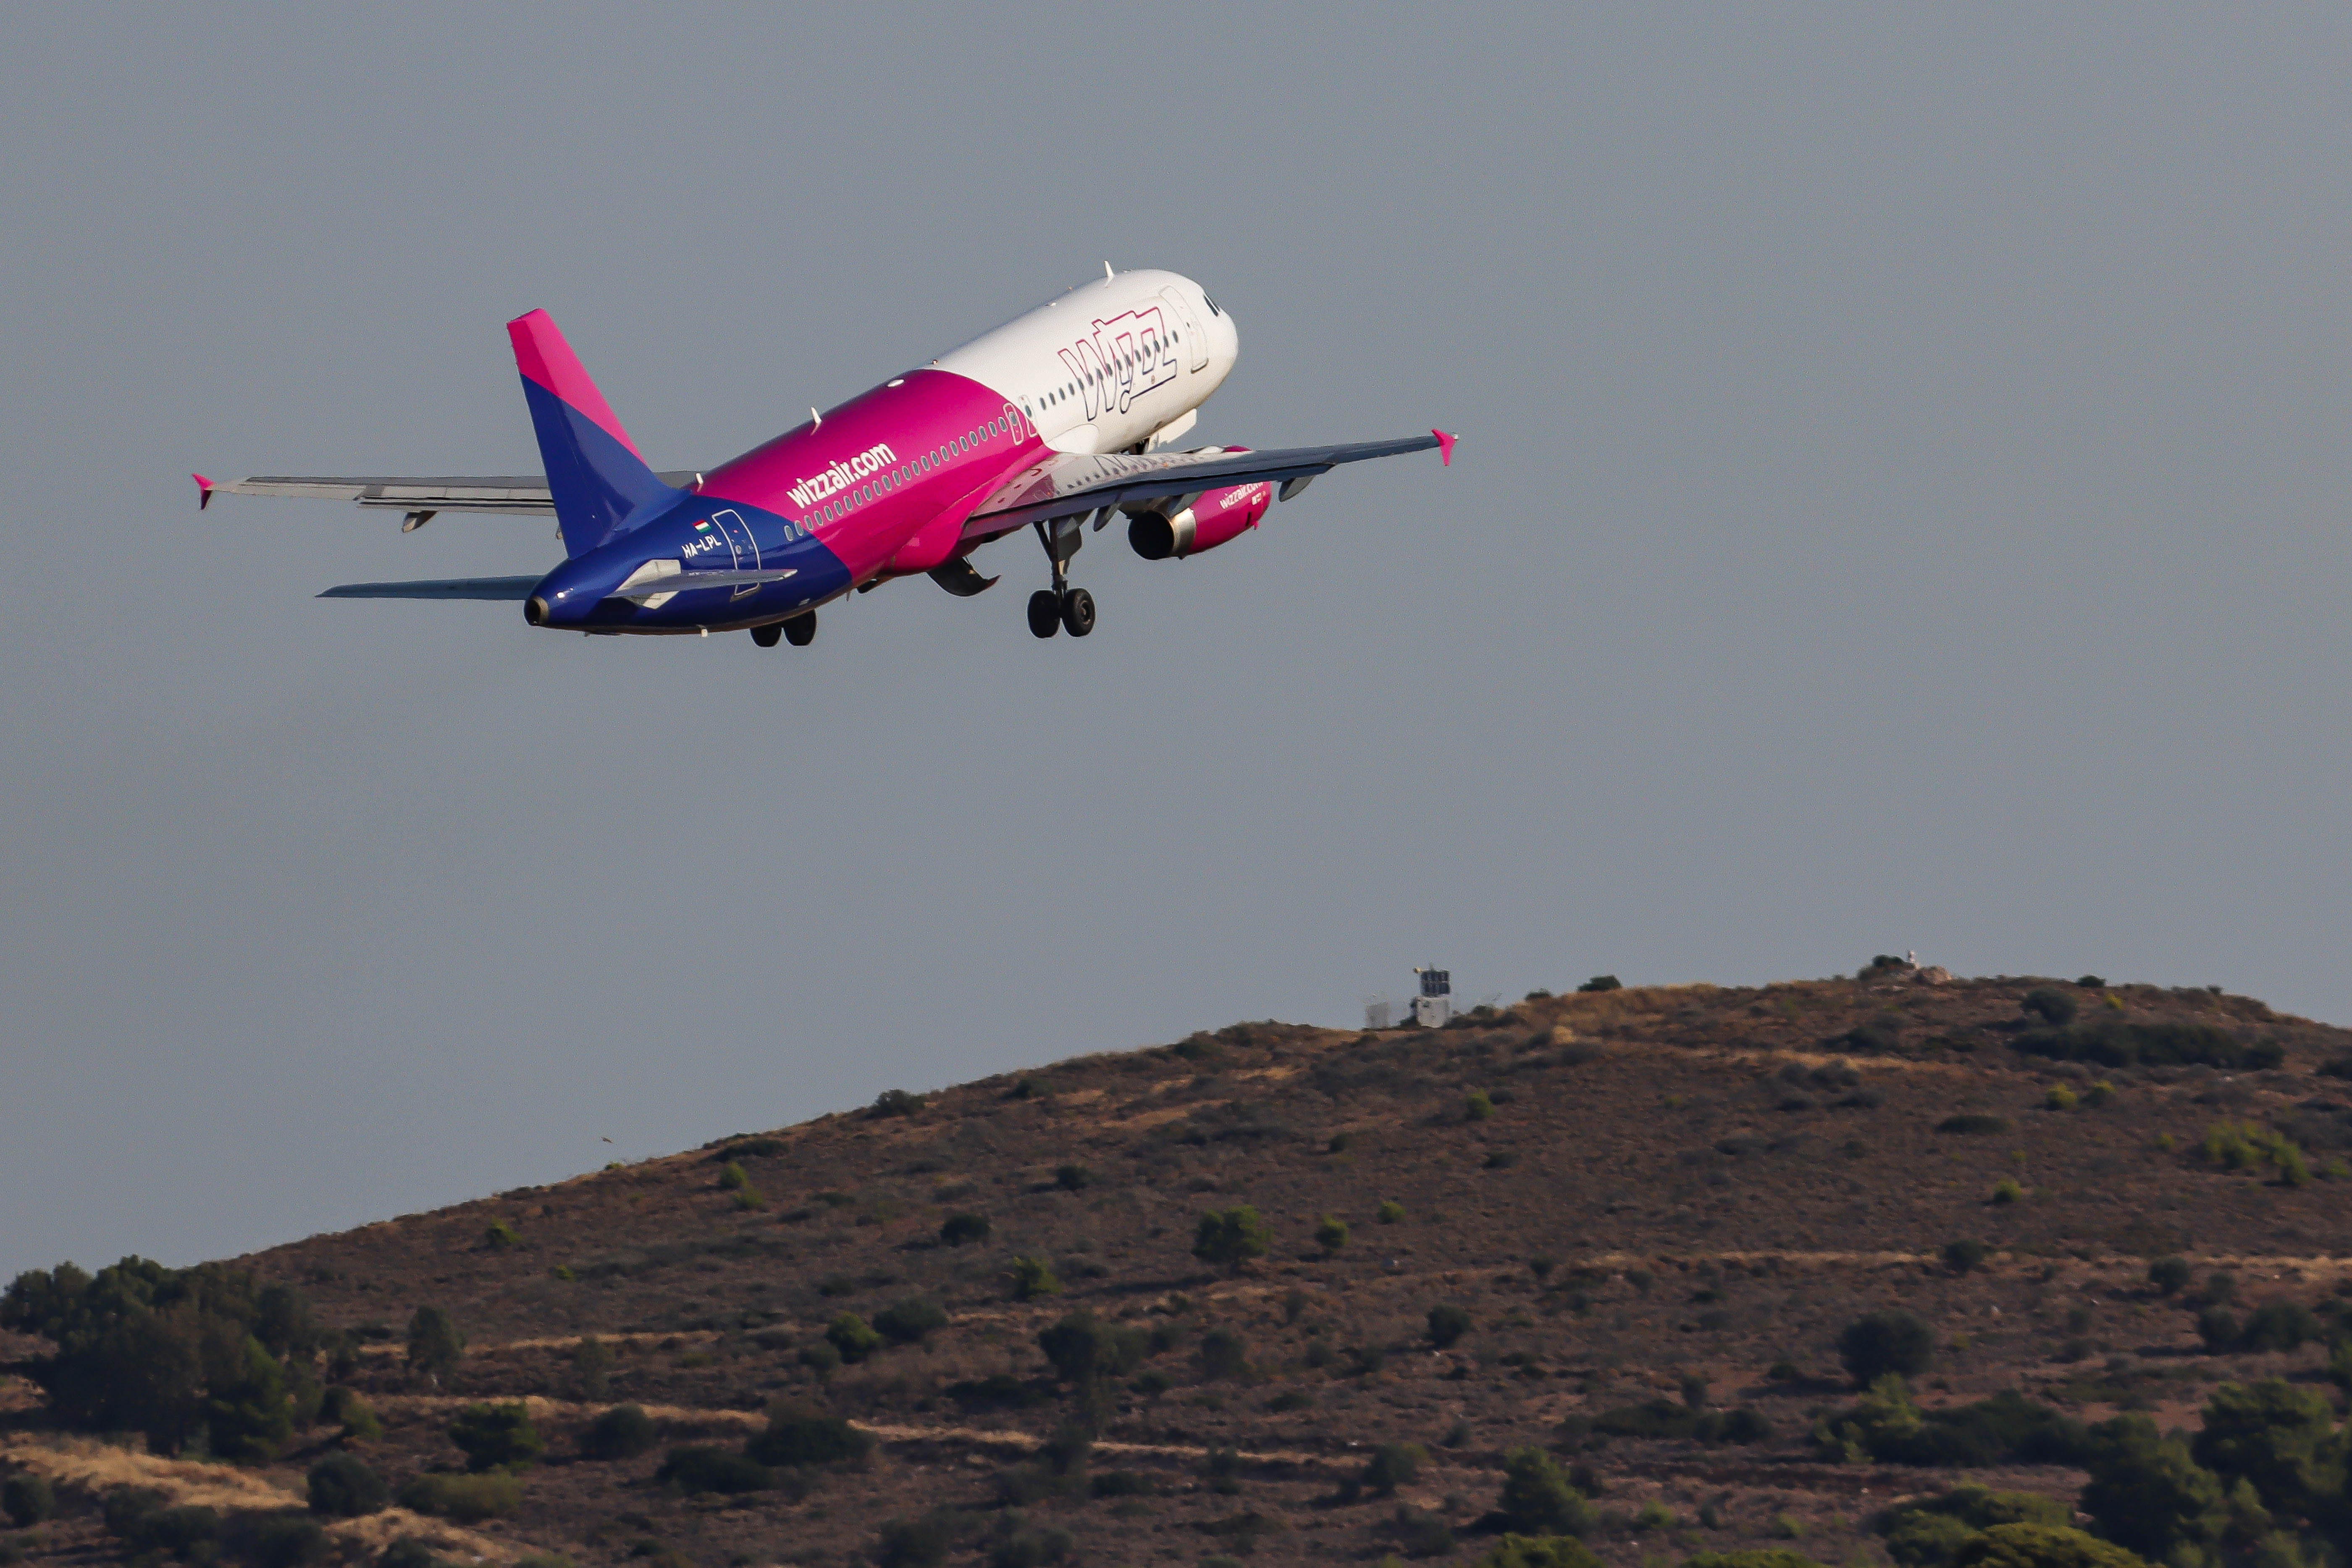 Durva veszteséggel zárta az előző pénzügyi évét a Wizz Air